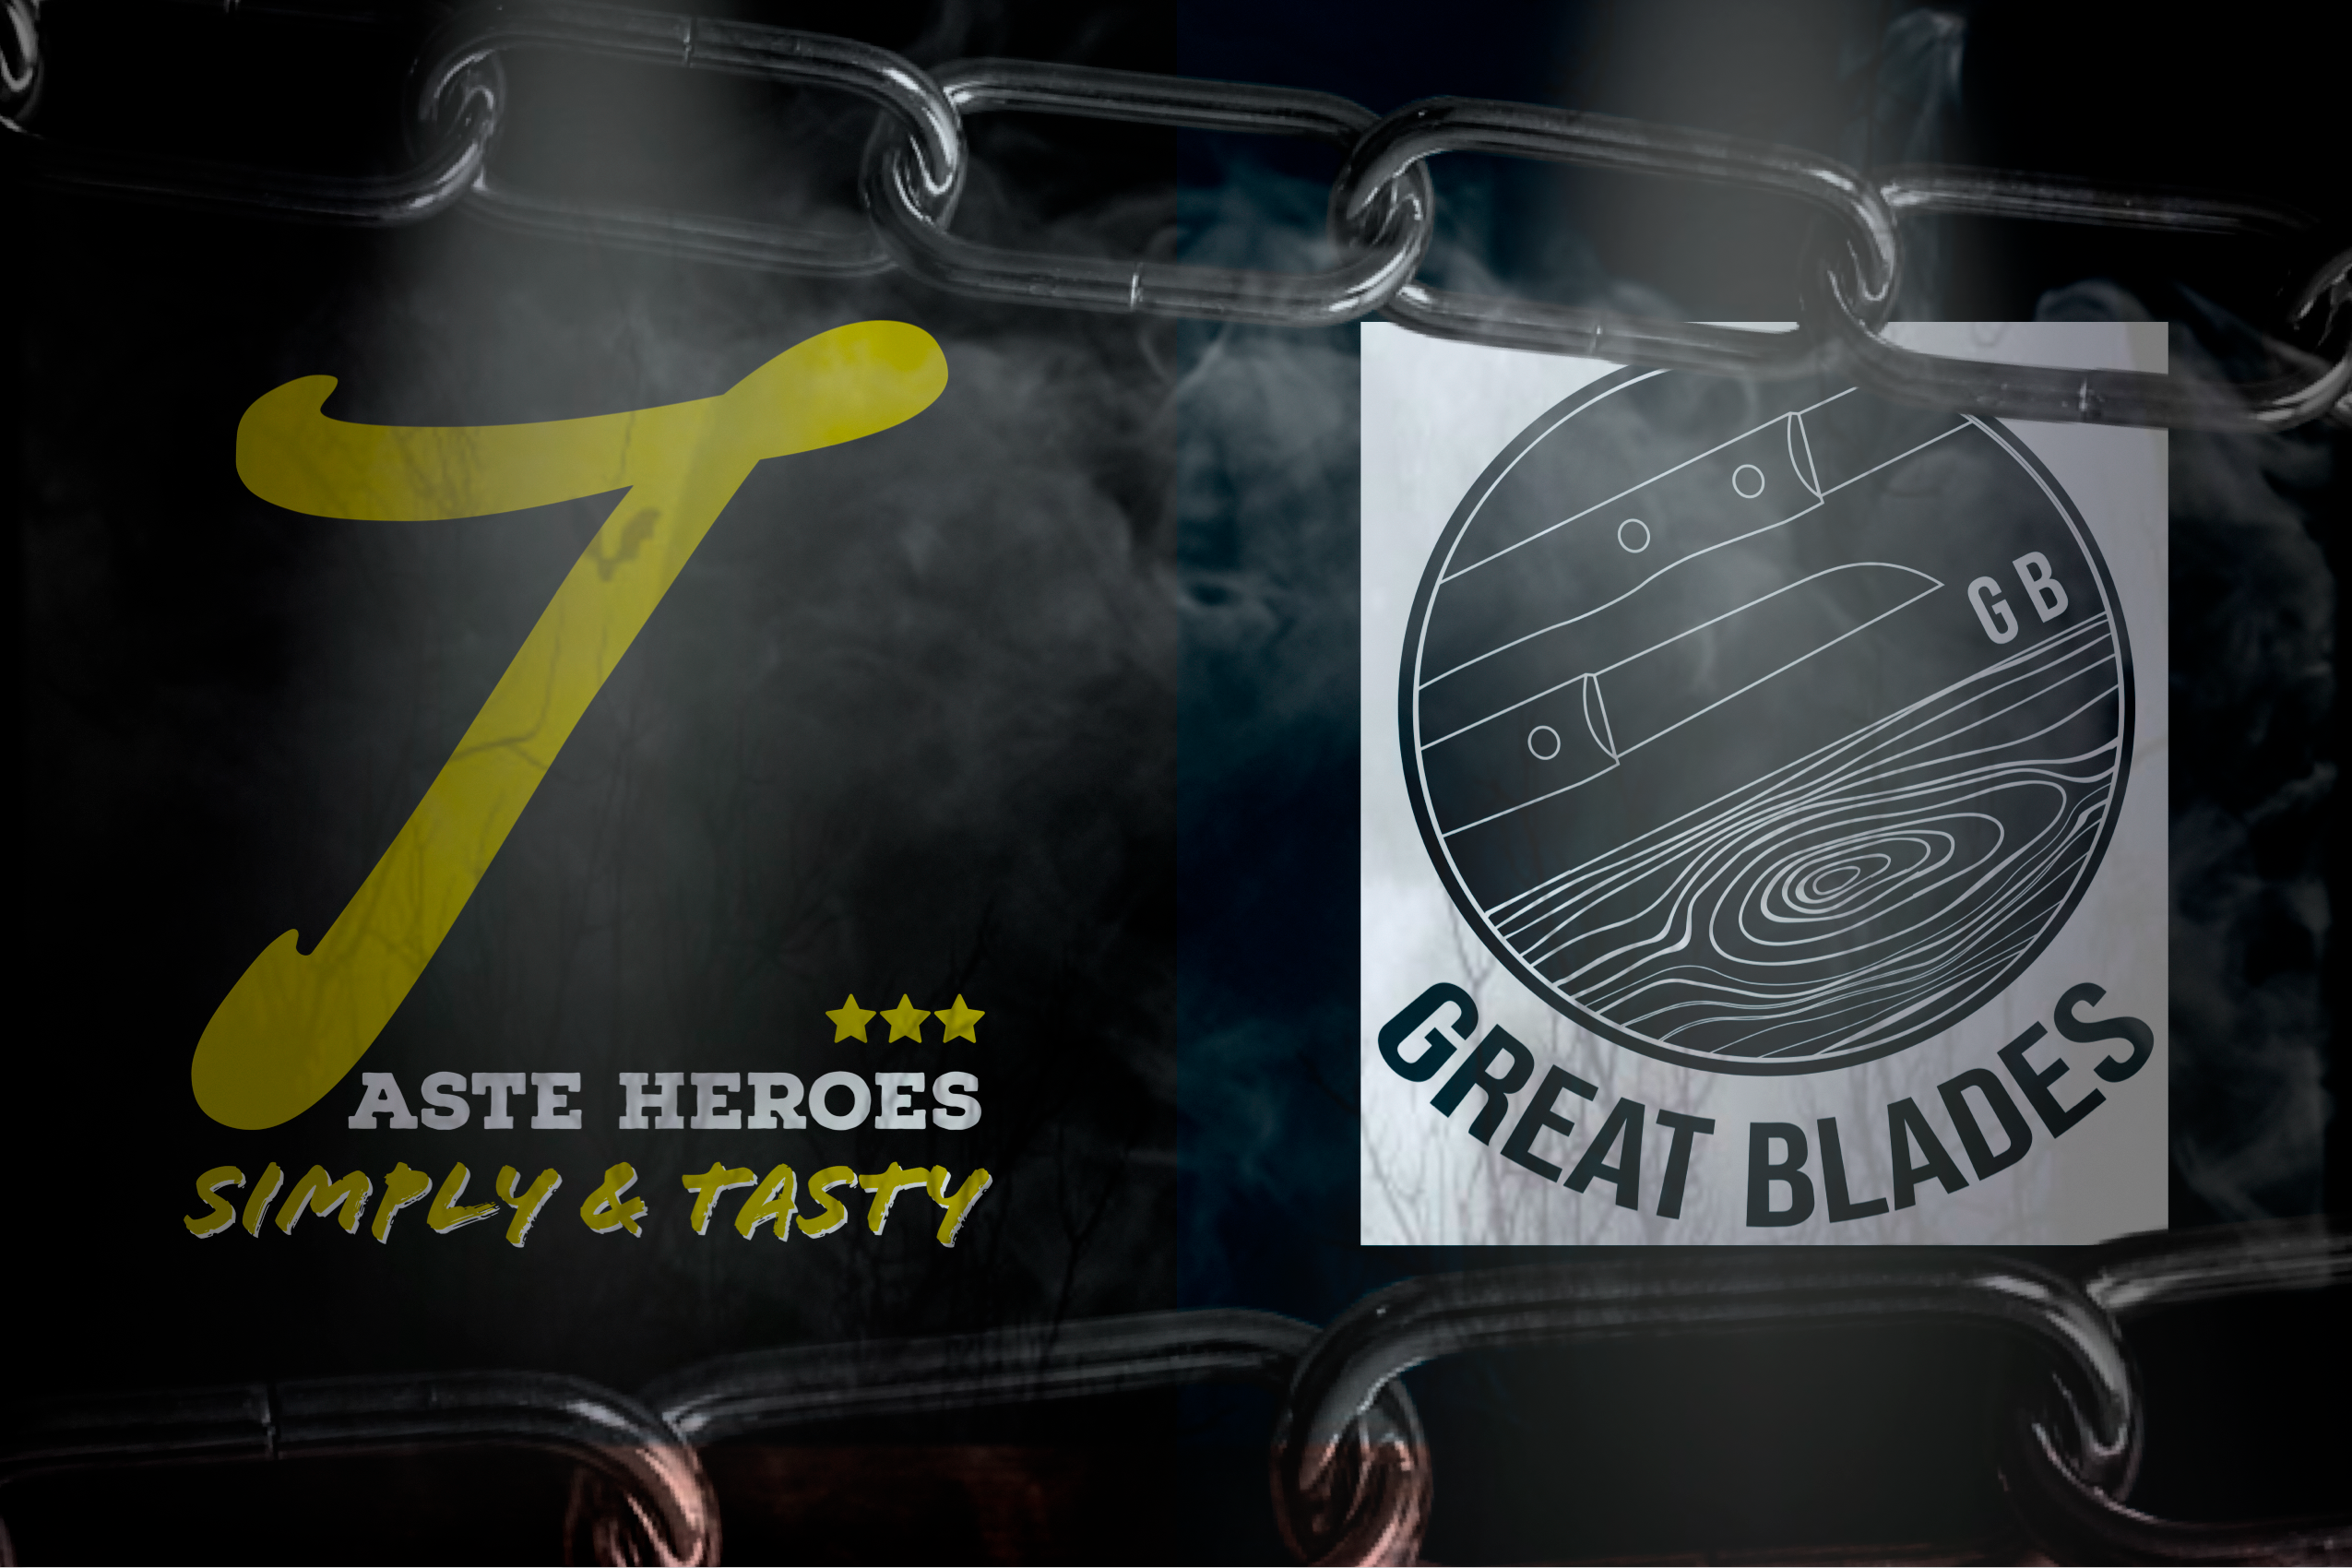 It’s a Match: Great Blades x Taste Heroes – Eine Kooperation aus Leidenschaft